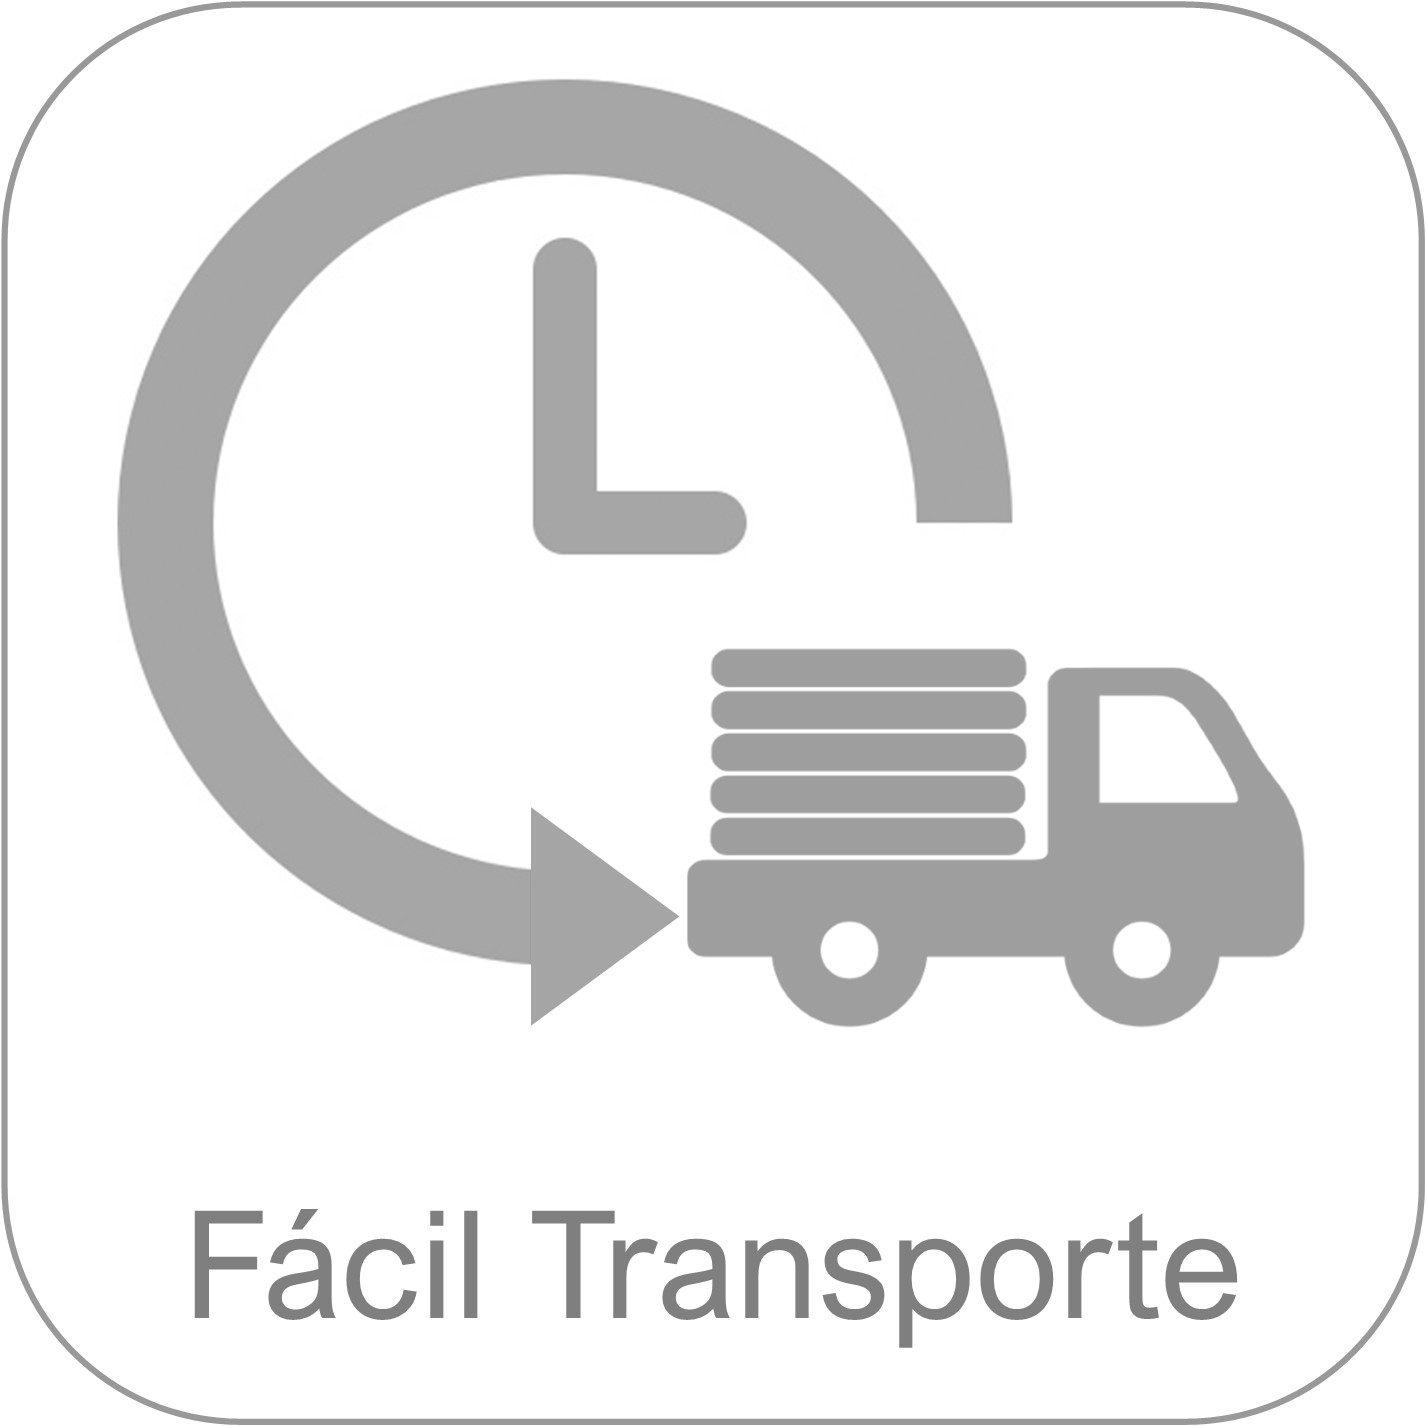 Monobloque NIC15 - Oficinas móviles -Fácil transporte